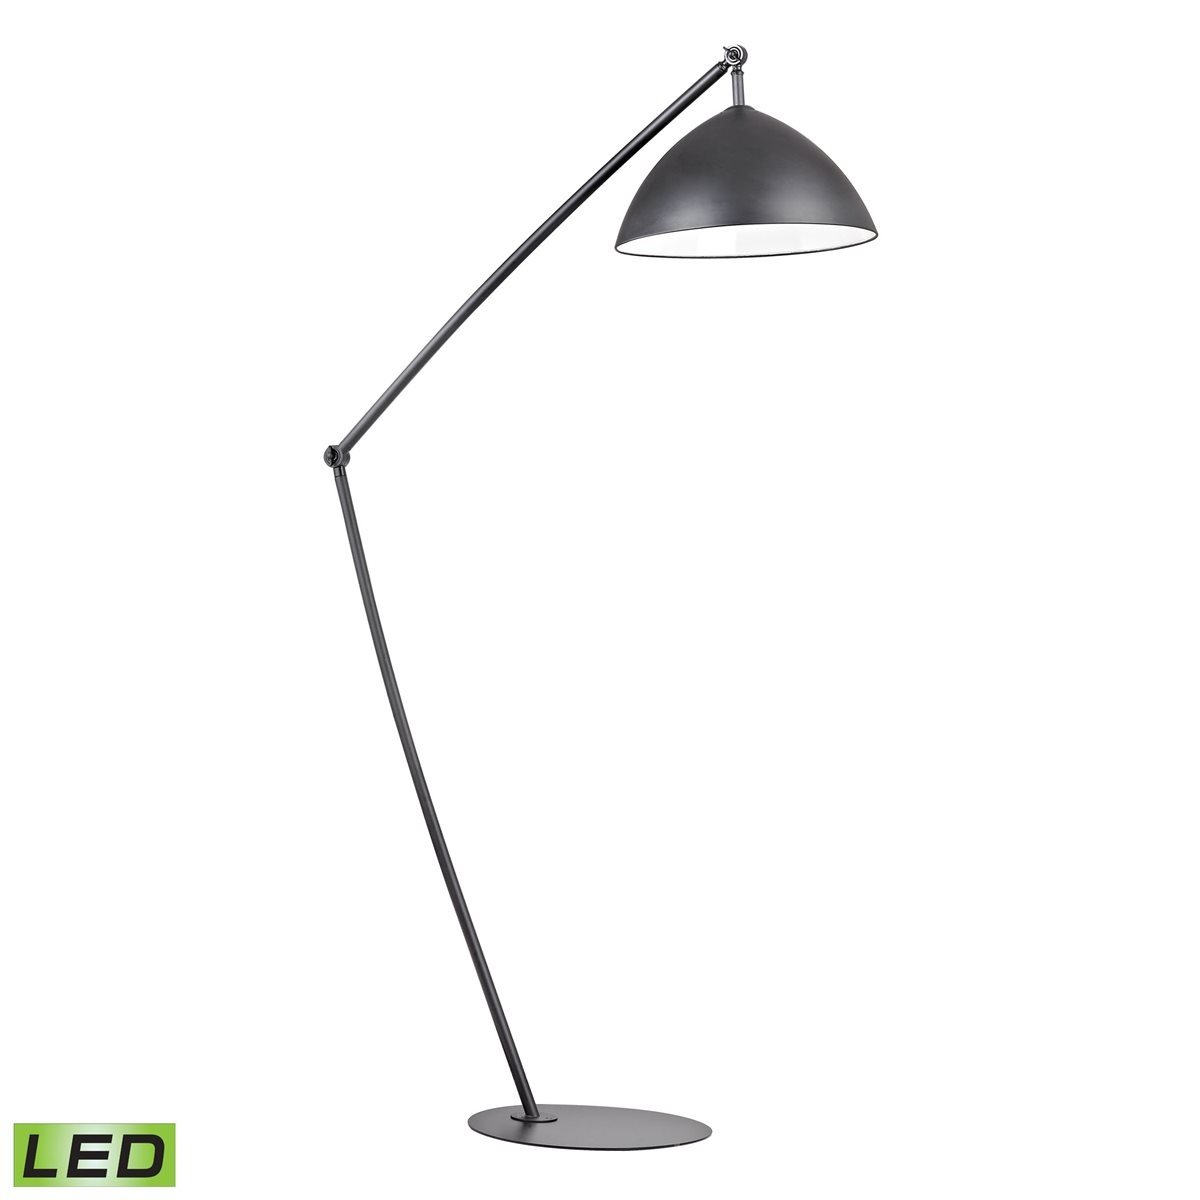 INDUSTRIAL ELEMENTS ADJUSTABLE FLOOR LAMP IN MATTE BLACK - LED - Image 0